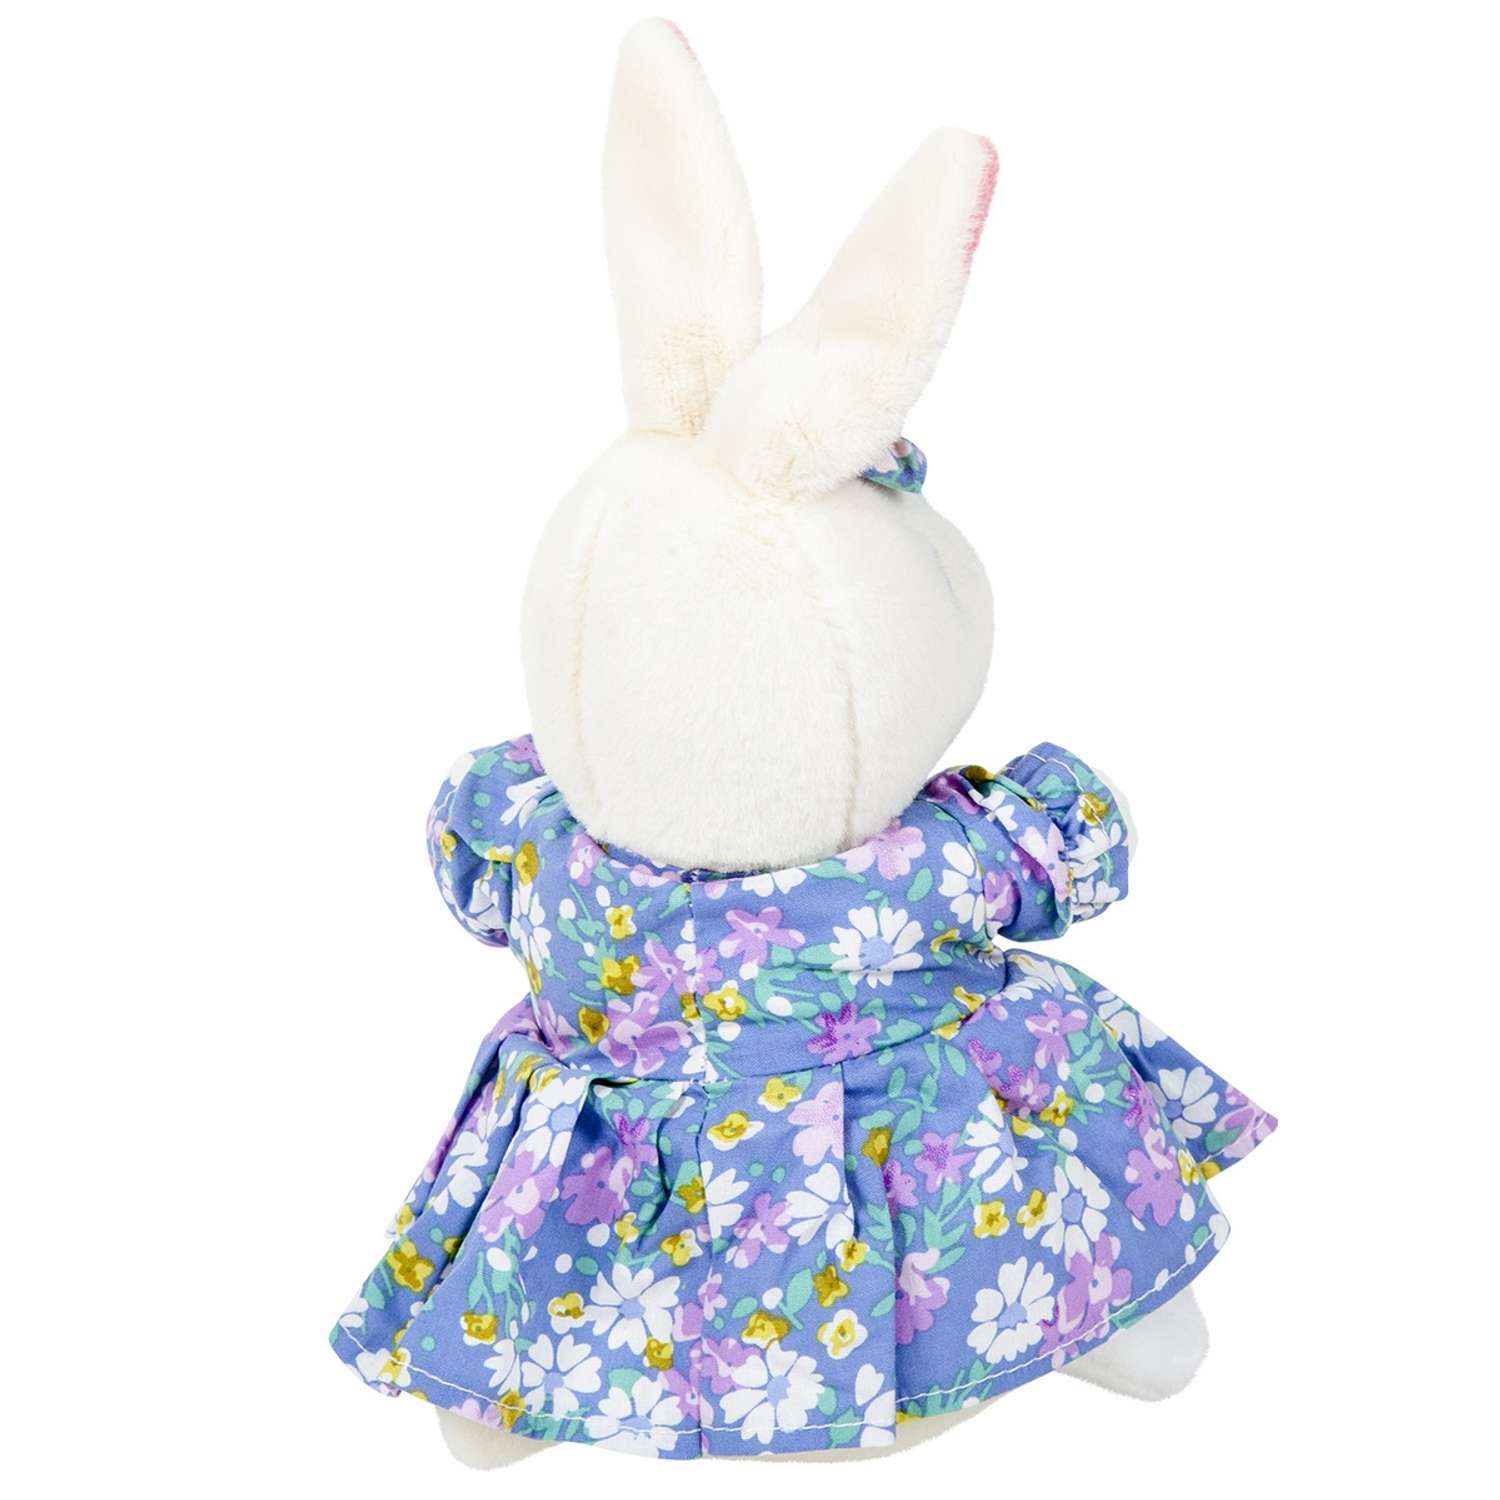 Игрушка мягкая Bebelot Зайчишка в голубом платье 17 см - фото 3